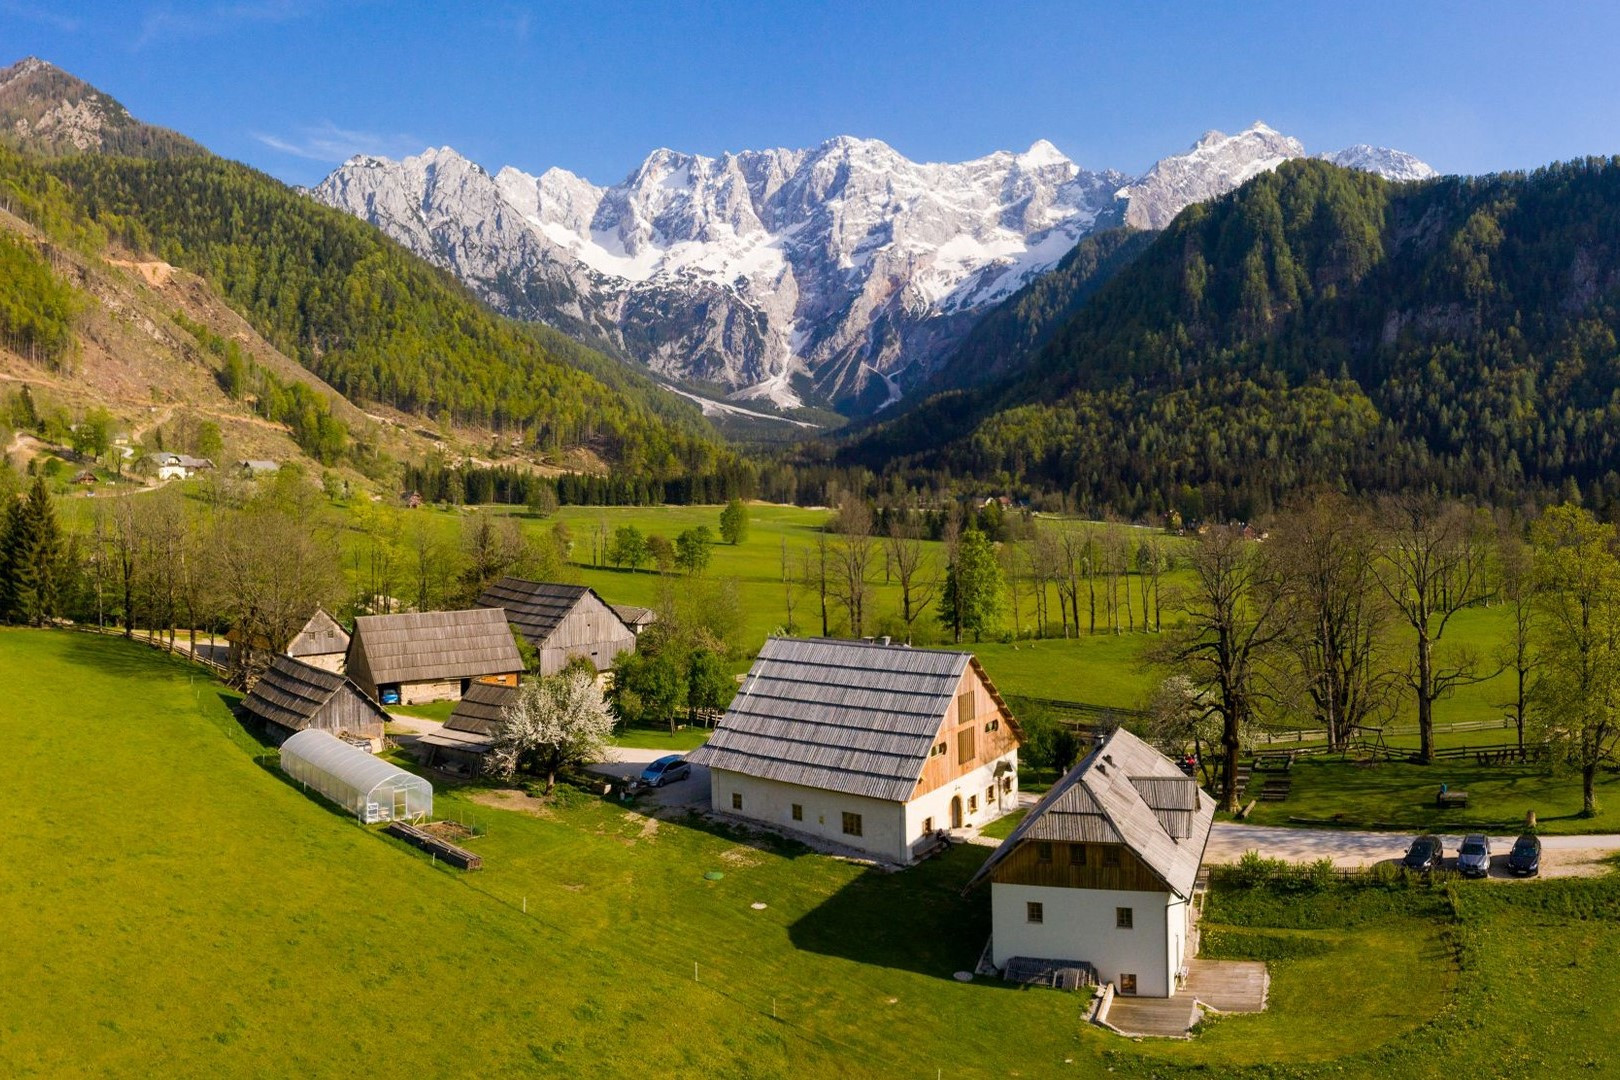 So turistične kmetije najbolj pristna oblika slovenskega turizma?